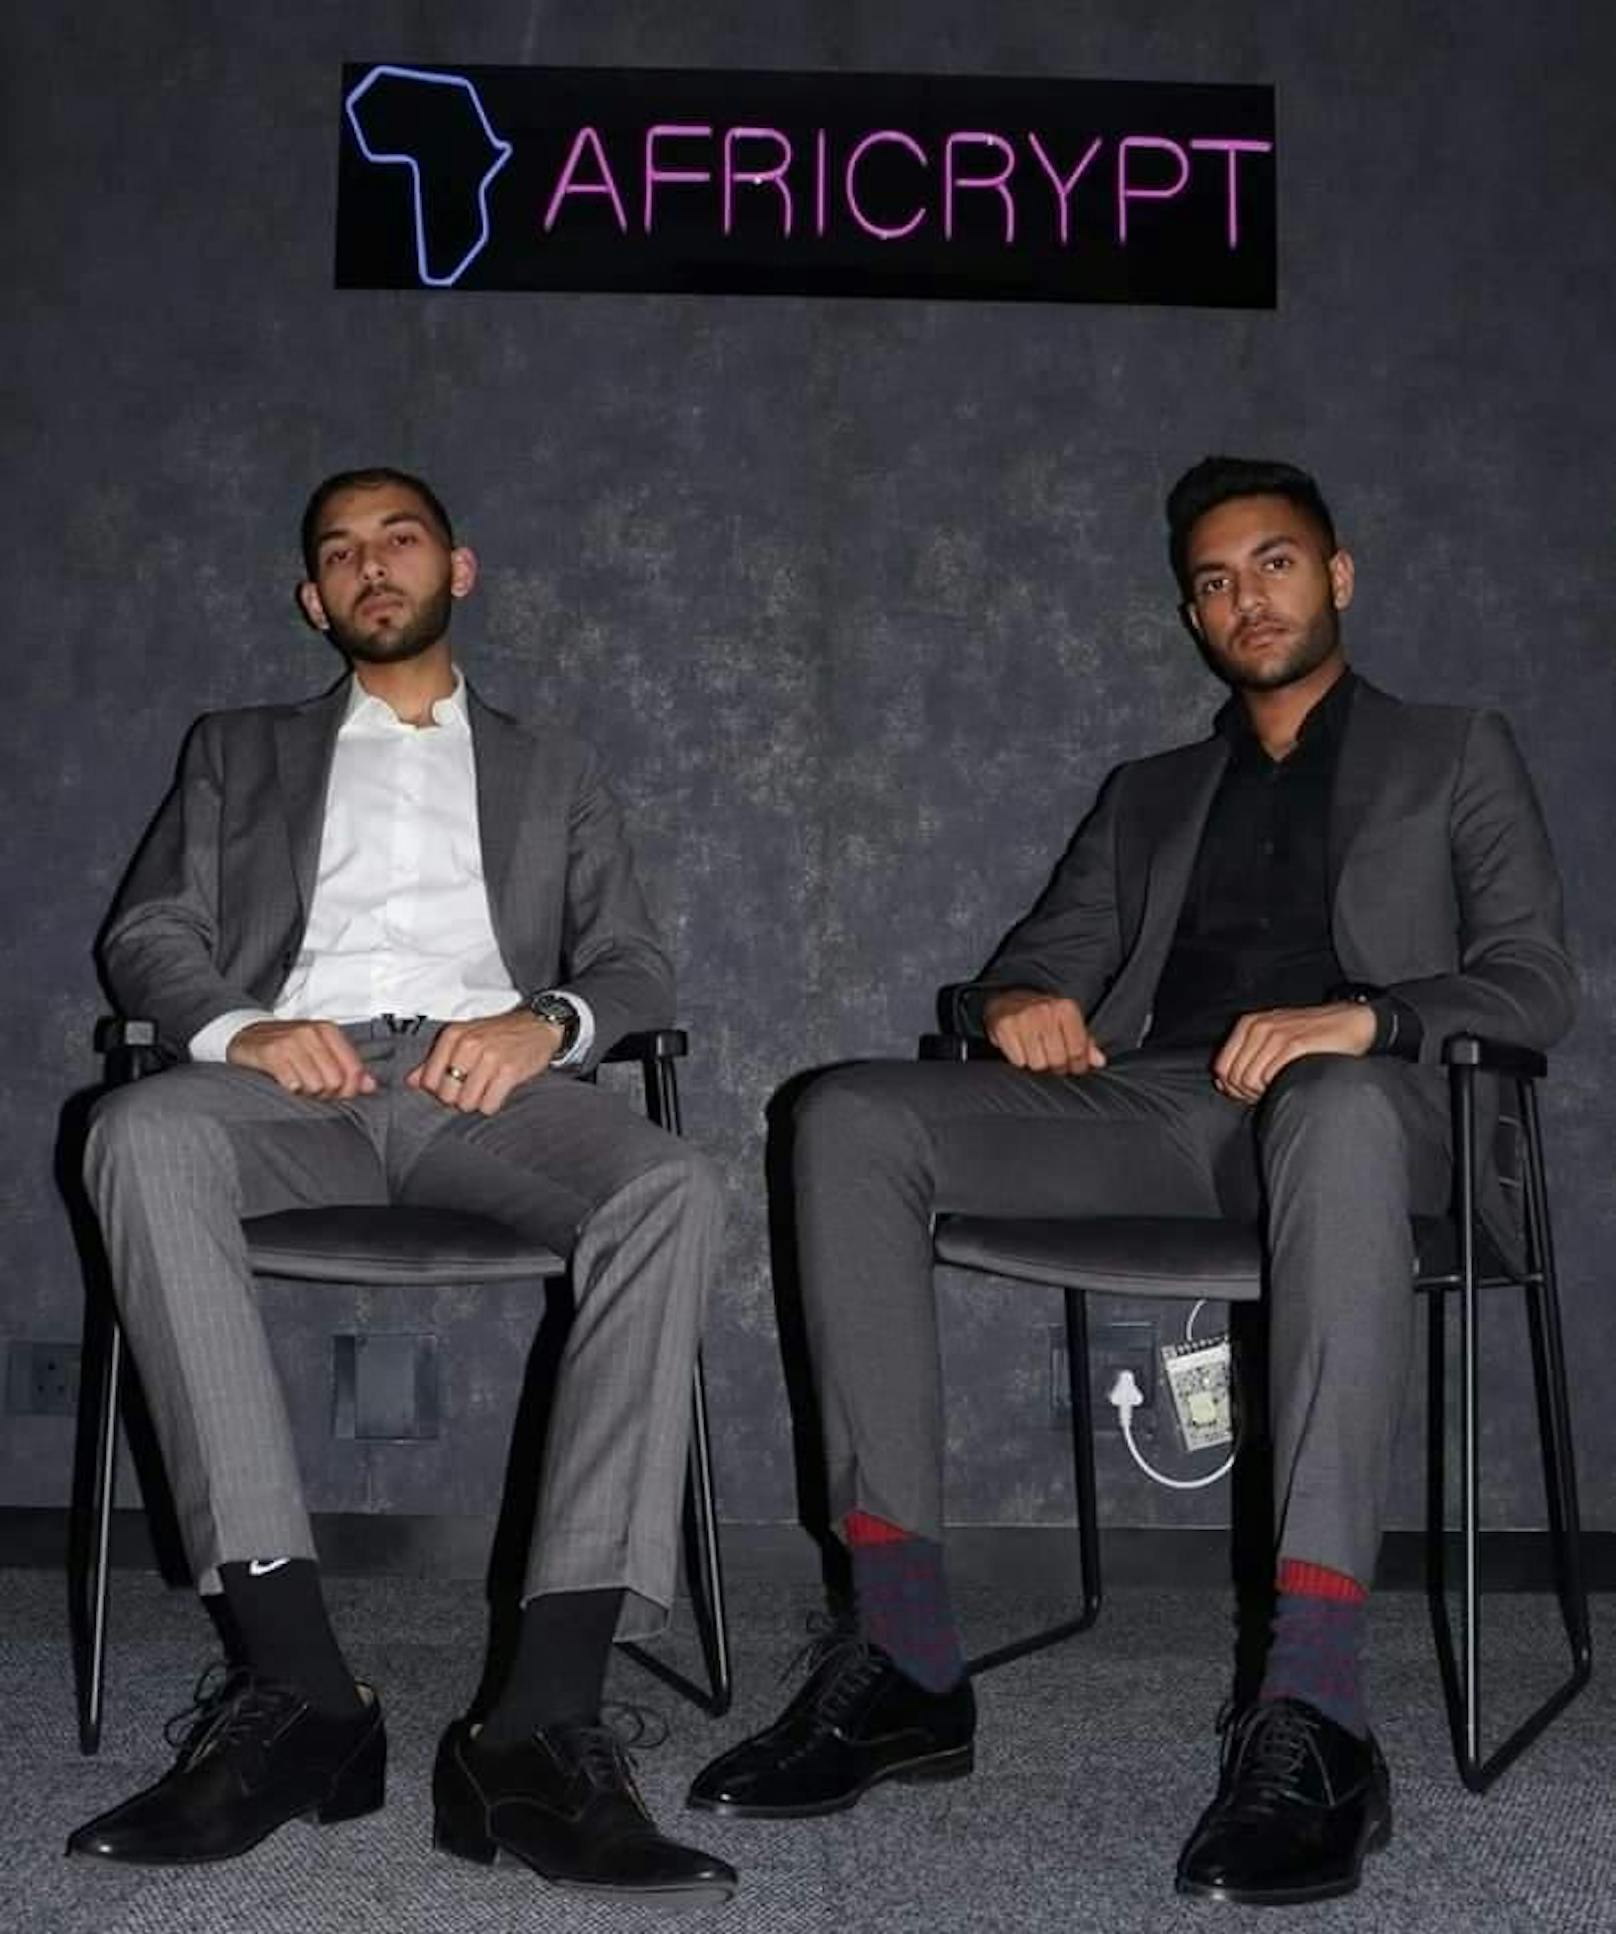 Das sind die Gründer von Africrypt: Raees und Ameer Cajee.